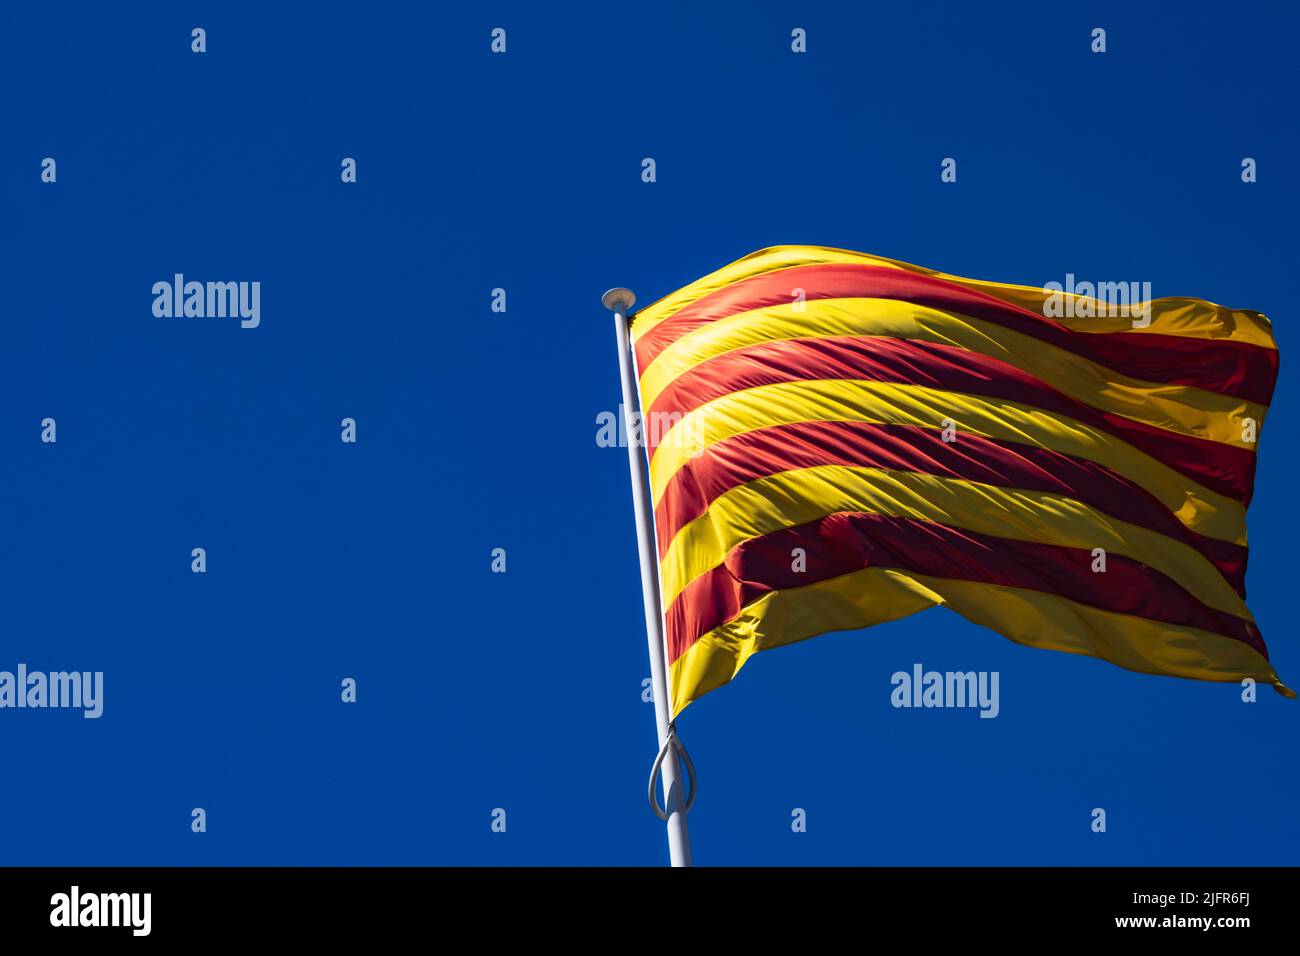 Die Flagge Kataloniens (Spanien) flattert im Wind. Auf der linken Seite des Bildes befindet sich ein großer Bereich mit negativem Raum, der durch den blauen Himmel entsteht. Stockfoto